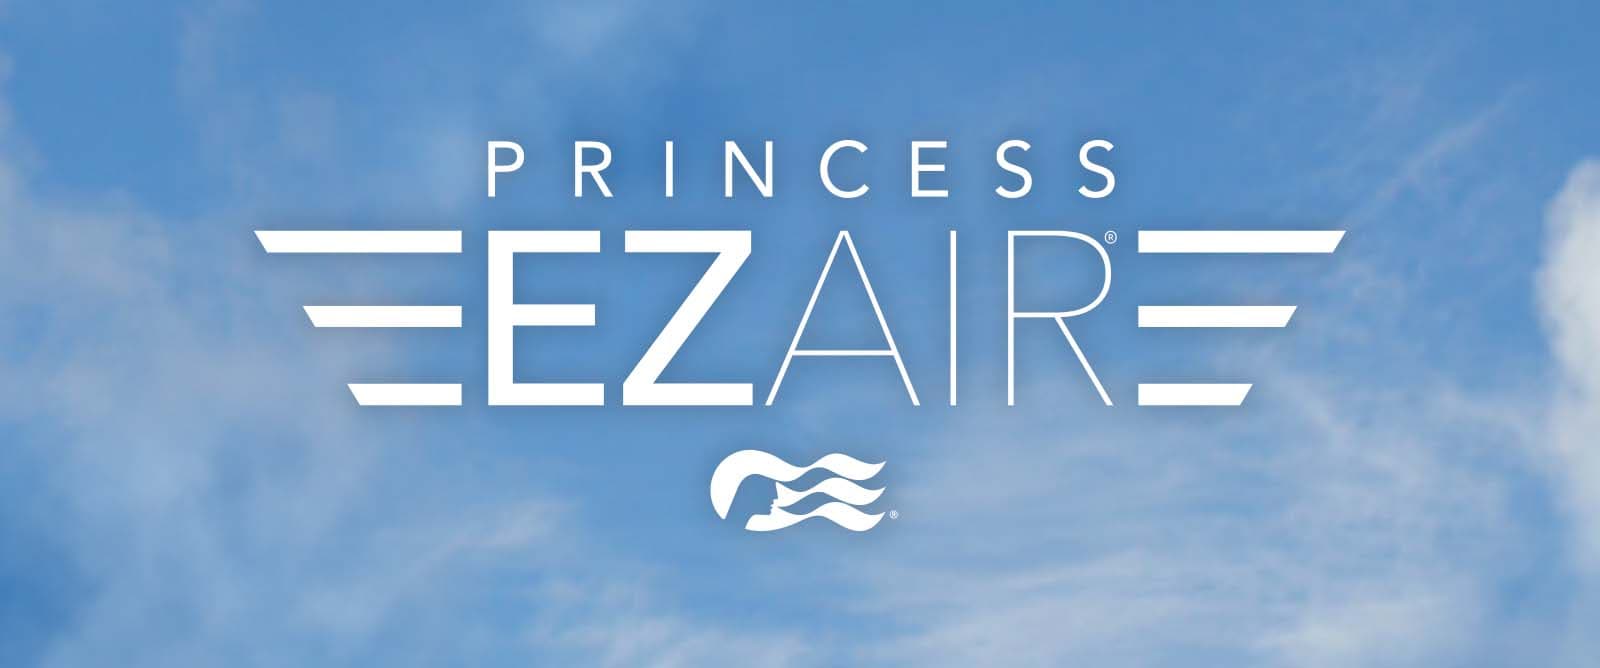 princess cruises ezair